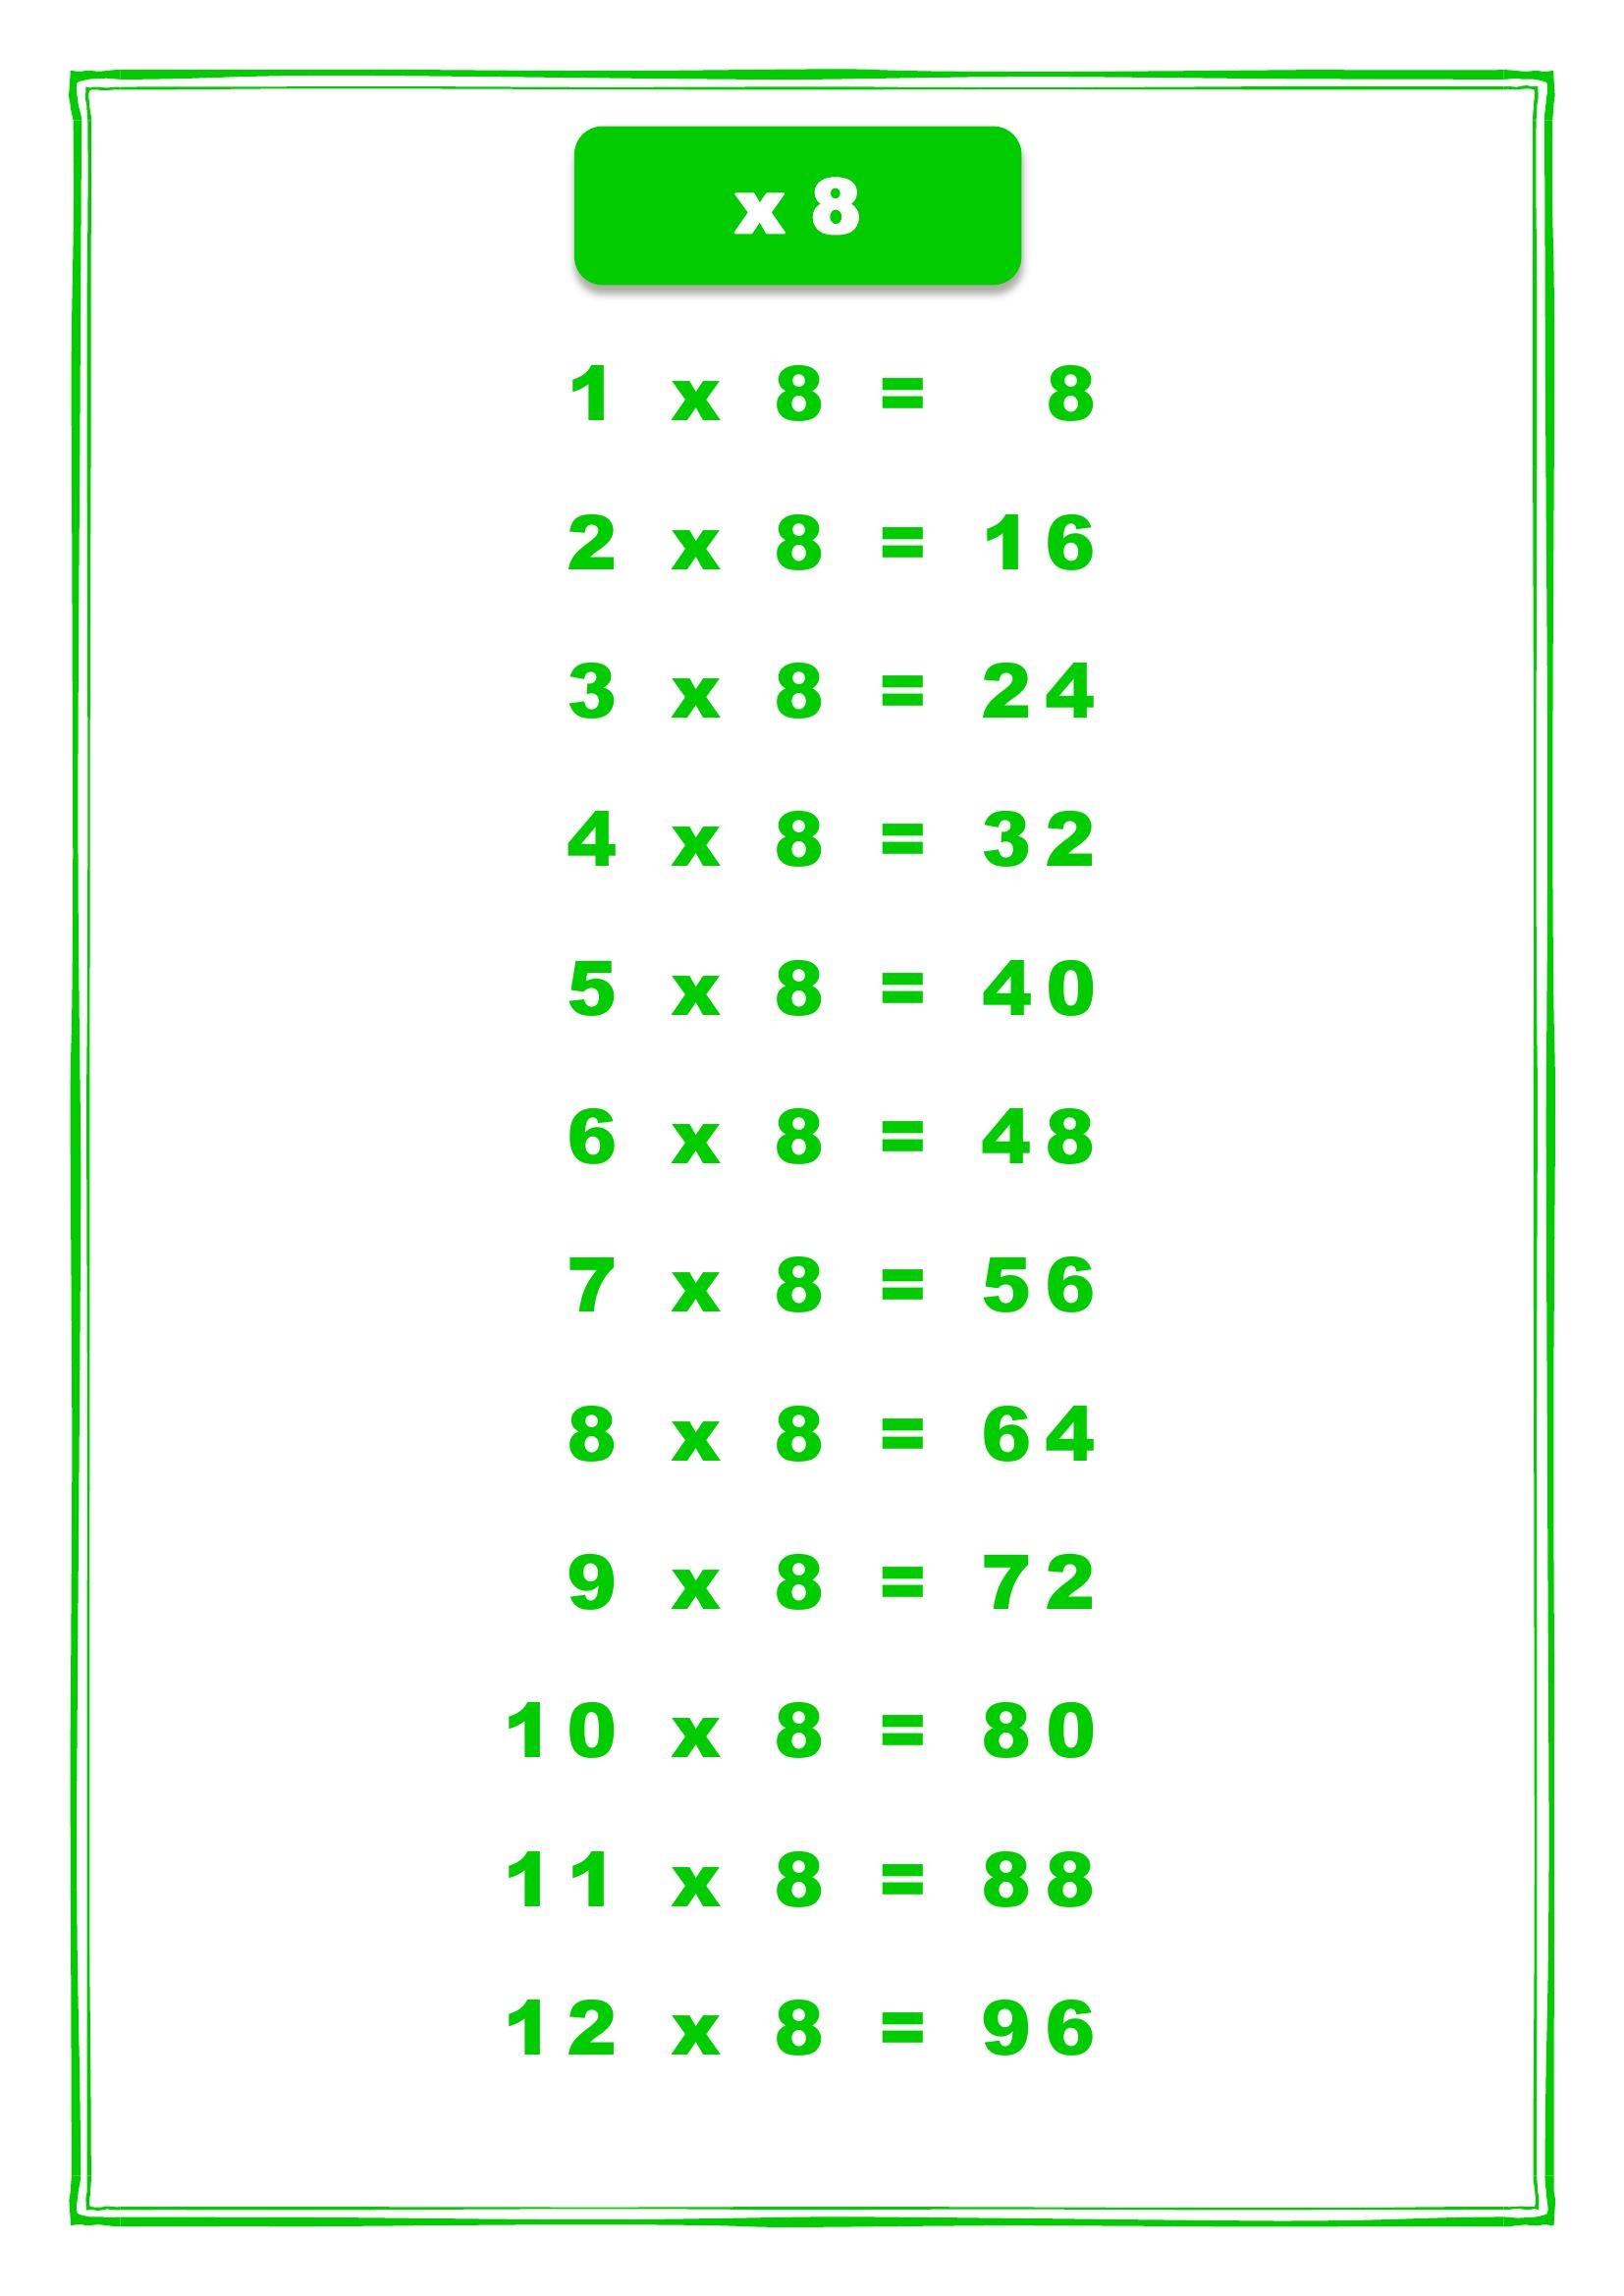 таблица умножения на 8